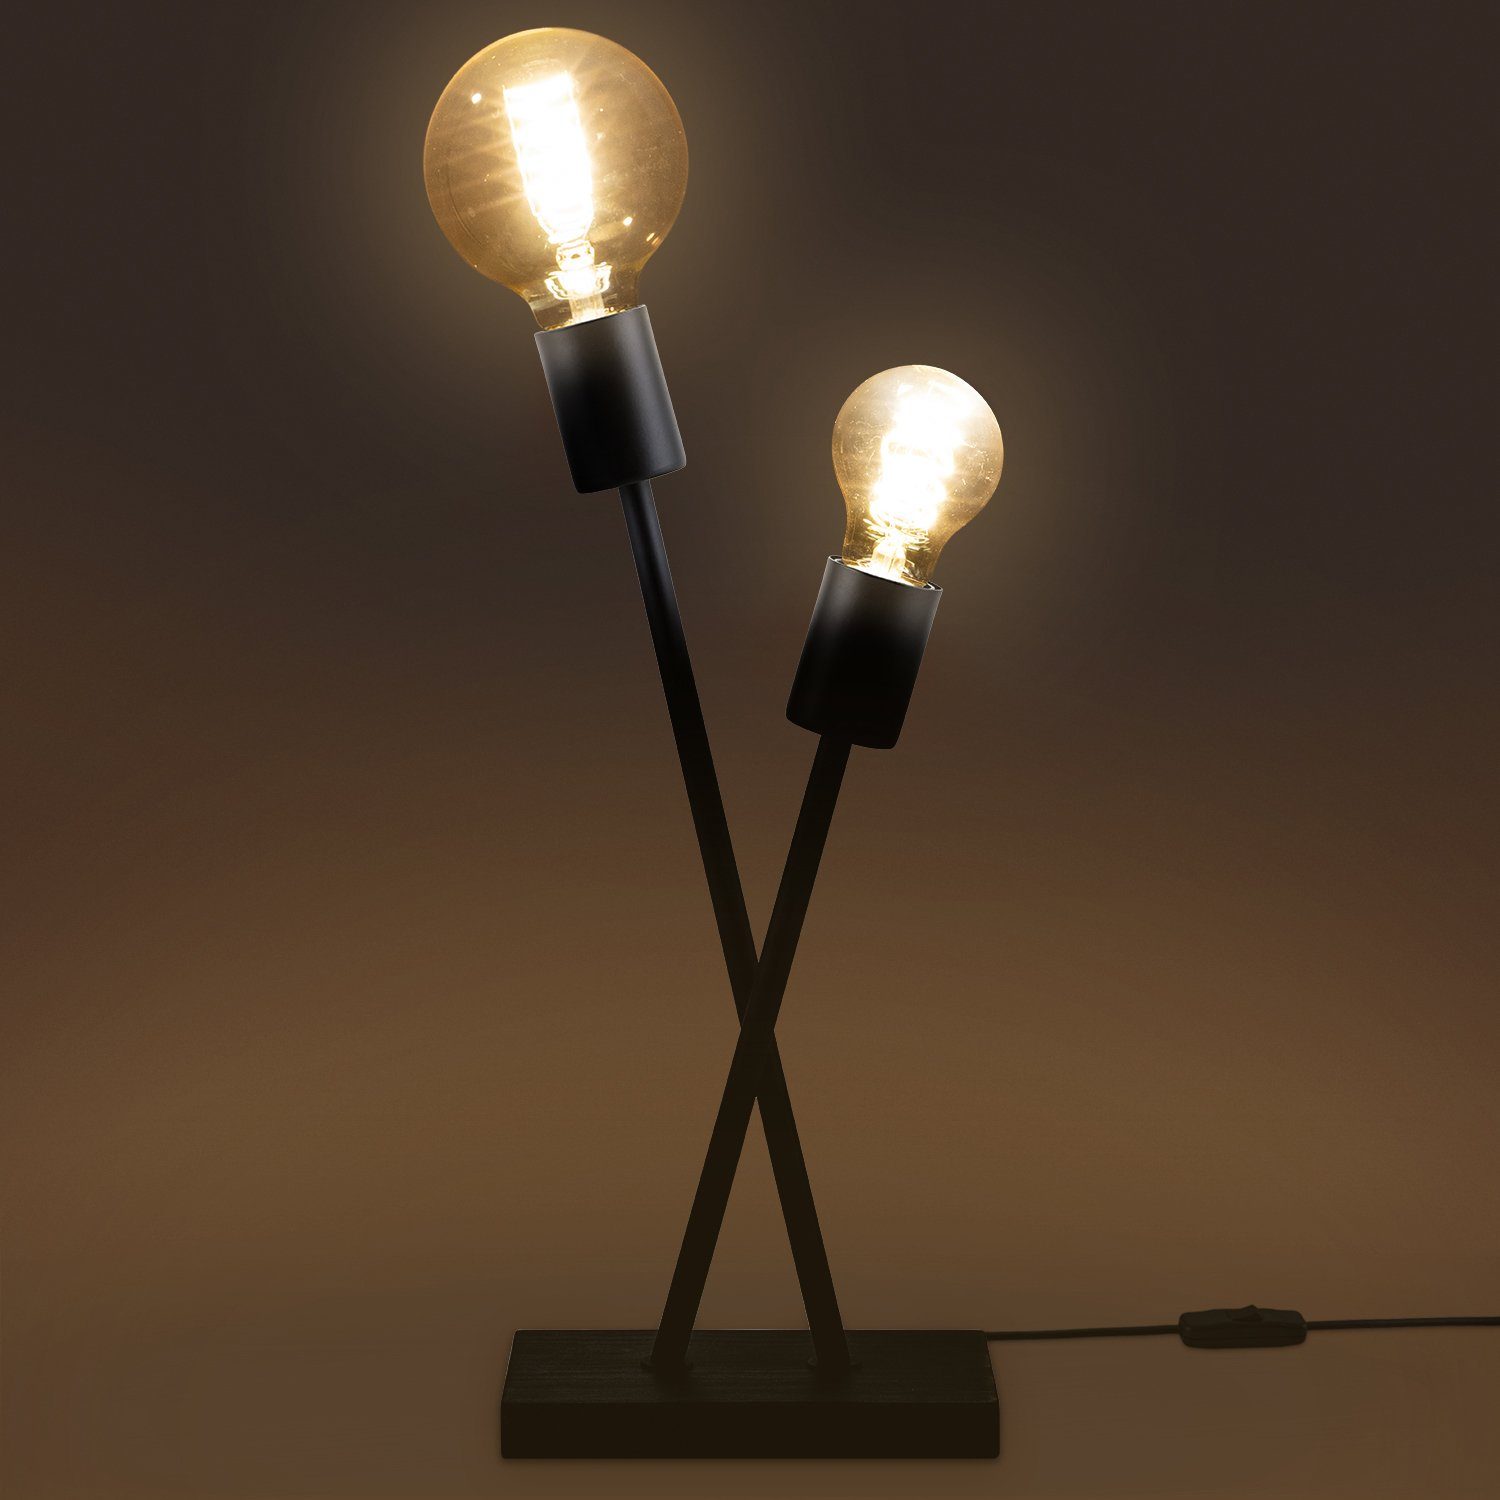 IKS, Tischleuchte Stehlampe Wohnzimmer Leuchtmittel, ohne Home Paco E27 Industrial Retro Vintage Lampe LED Design